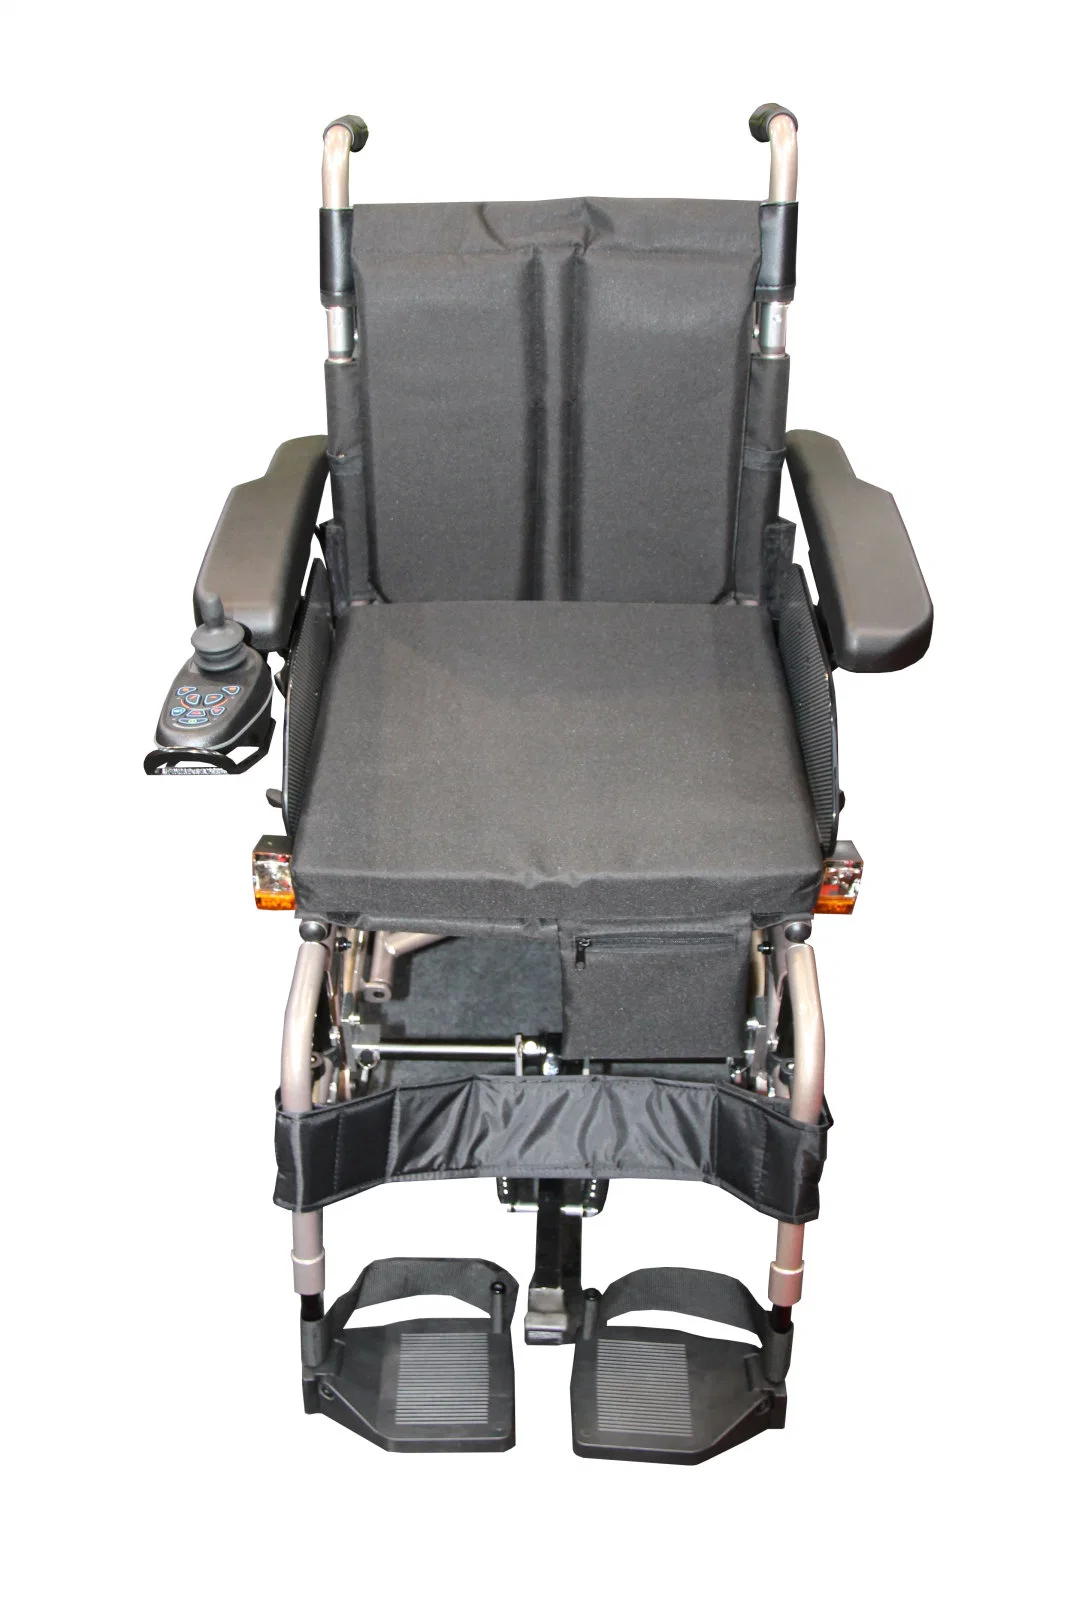 ارتفاع سهل عالي الأداء طي الكاني الكهربي للمقاعد القابلة للضبط والكر كرسي متحرك محمول